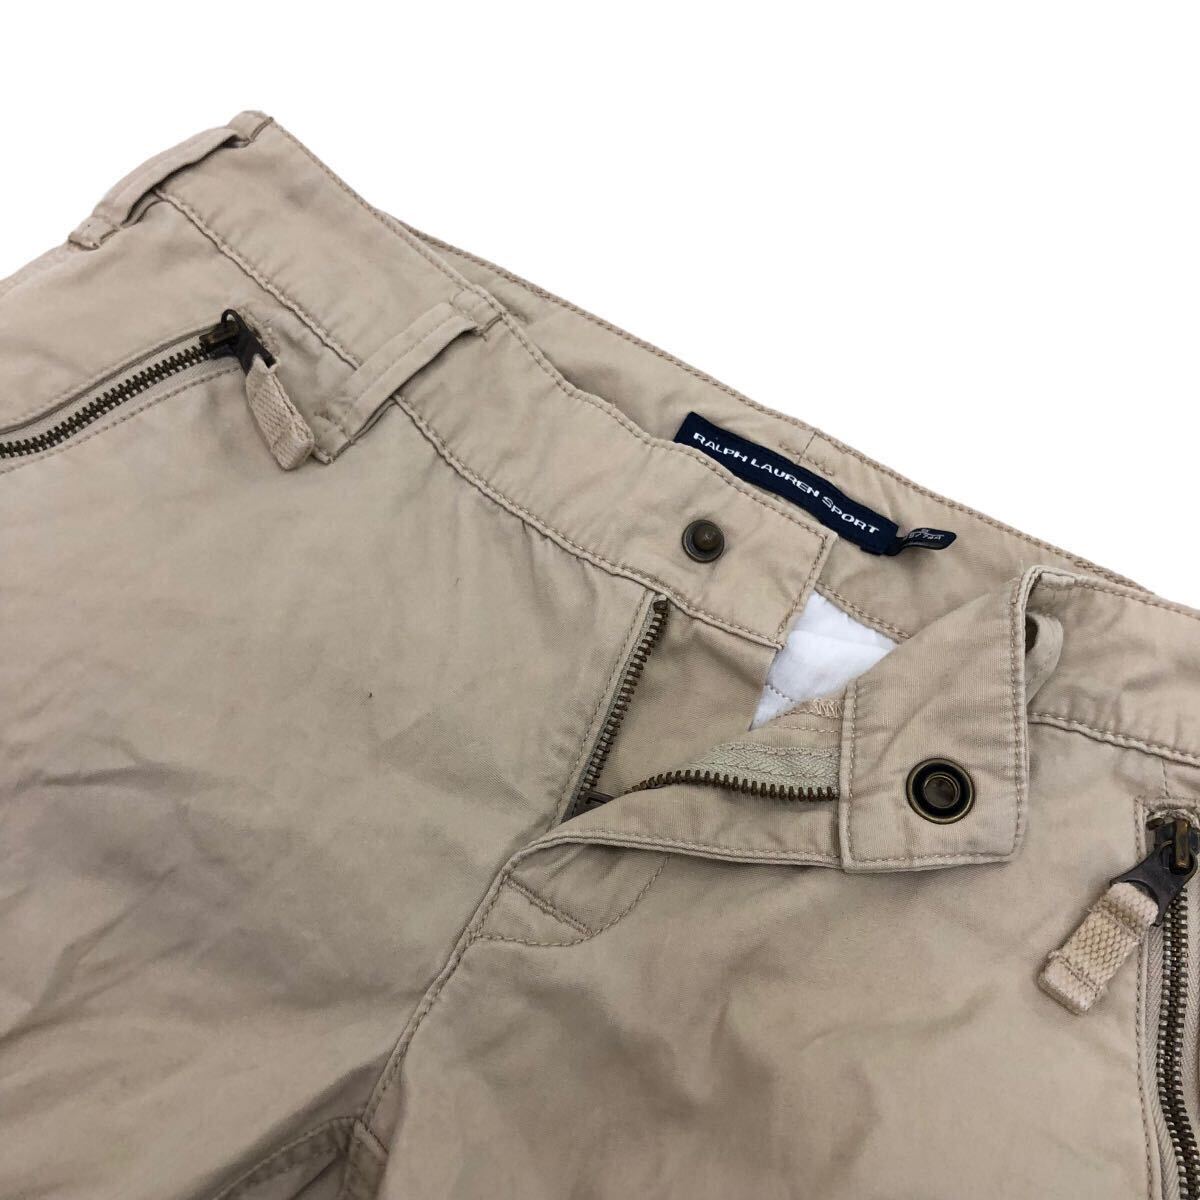 NB209 RALPH LAUREN SPORT Ralph Lauren cargo pants pants trousers bottoms cotton cotton 100% beige group lady's 6 165/74A